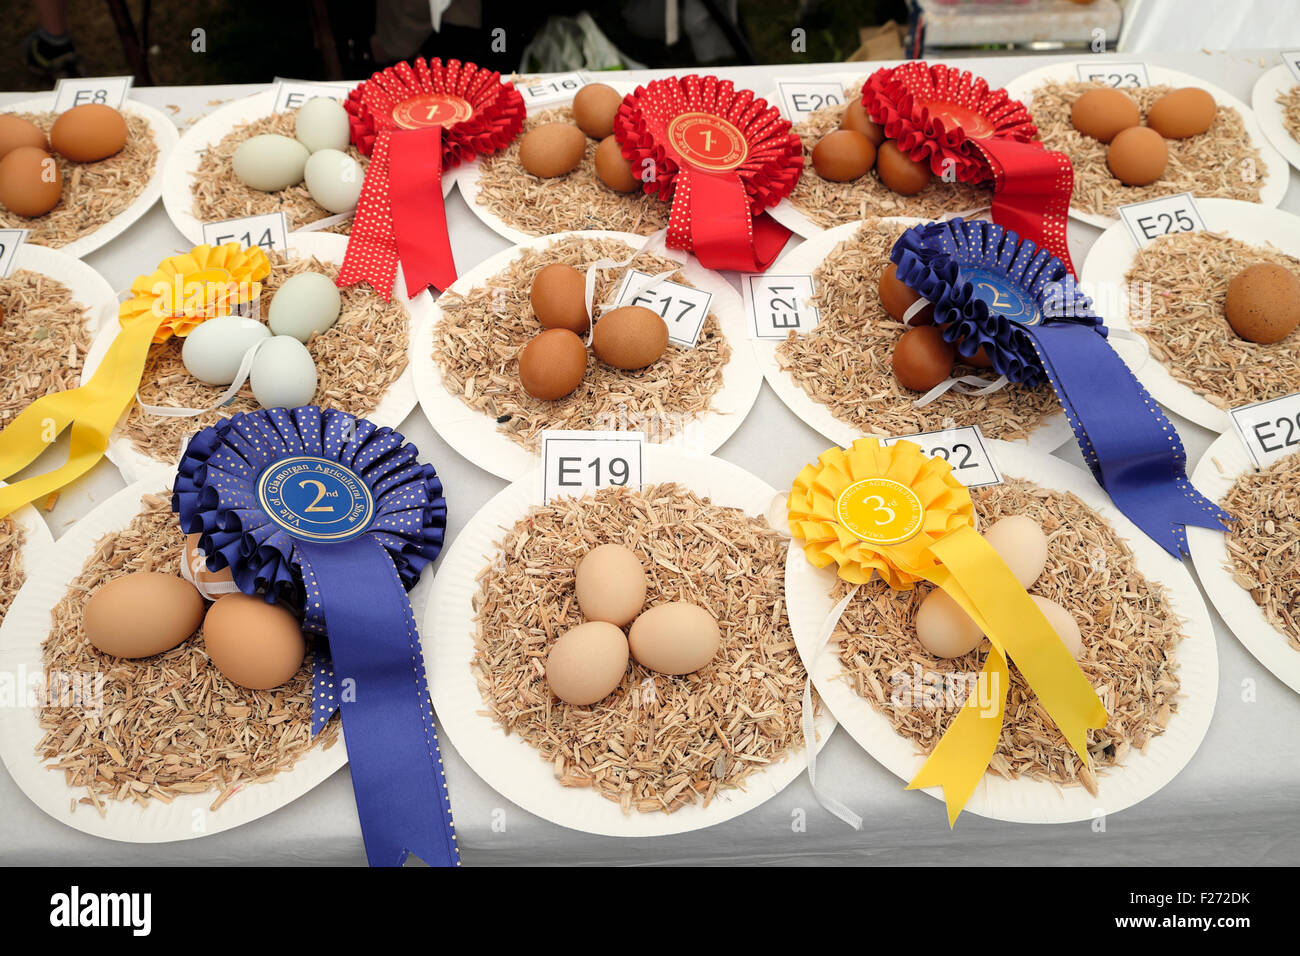 Nastri sul vincitore del premio bianco e marrone di uova di galline display a 2015 Vale of Glamorgan spettacolo agricolo in Wales UK KATHY DEWITT Foto Stock